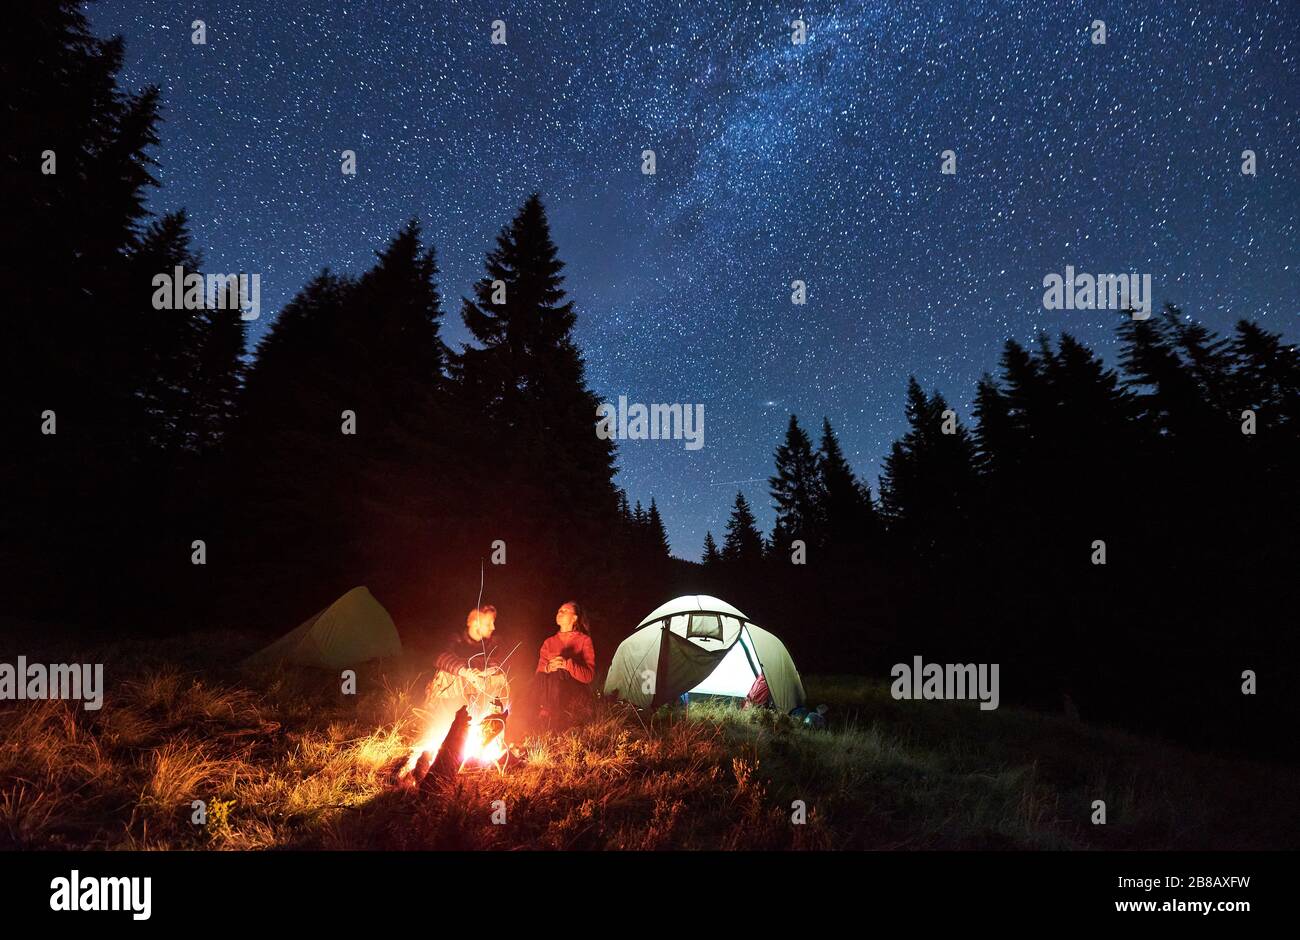 Vue sur l'avant de couples amoureux touristes assis par feu de camp lumineux près de deux tentes, profiter d'une belle nuit de camping ensemble sous le ciel sombre plein d'étoiles et la voie brillante lactée, chaud nuit d'été. Banque D'Images